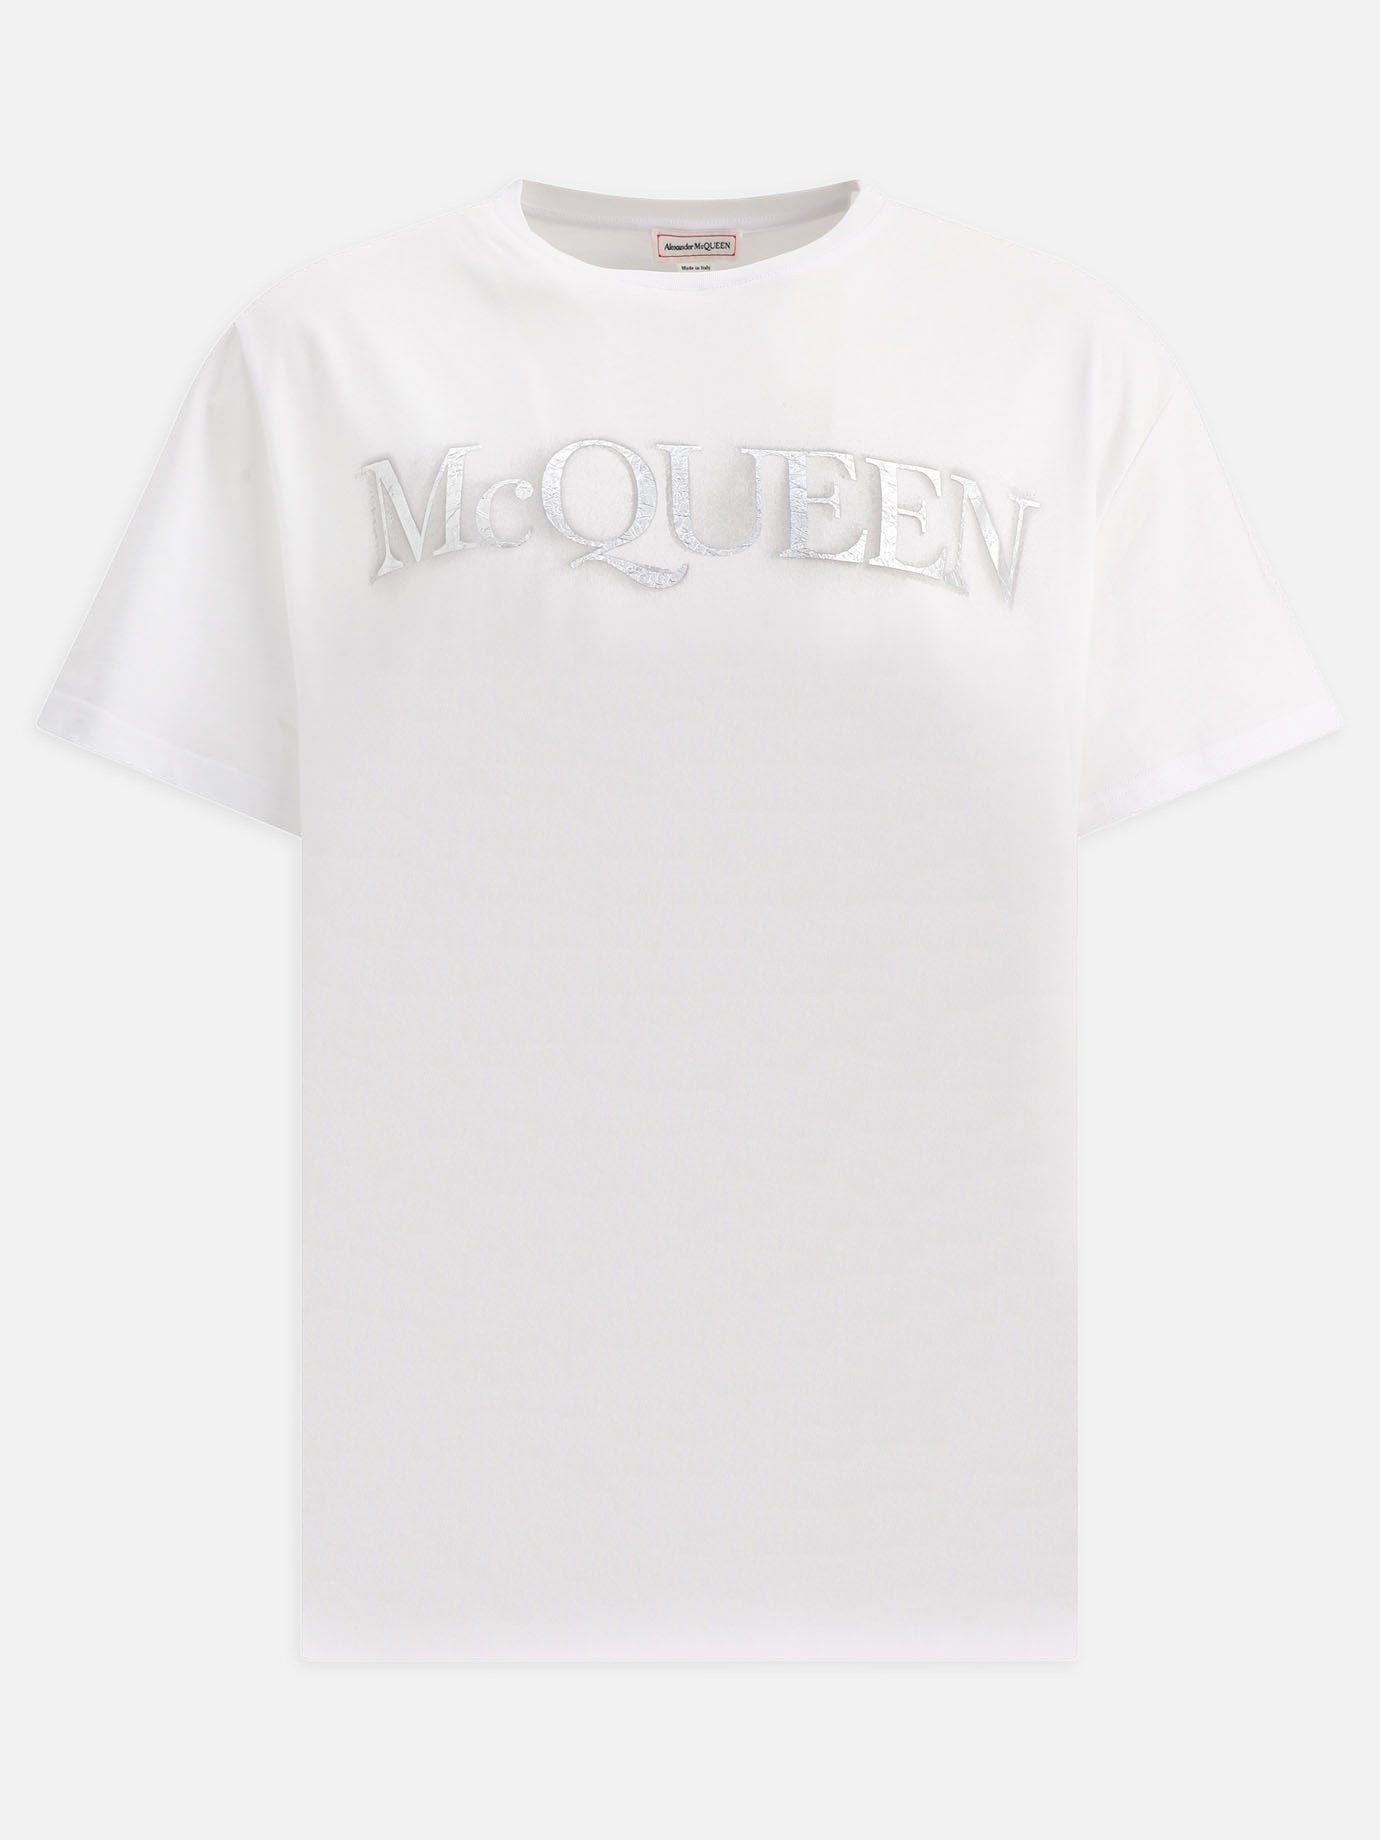 T-shirt  McQueen by Alexander McQueen - 2